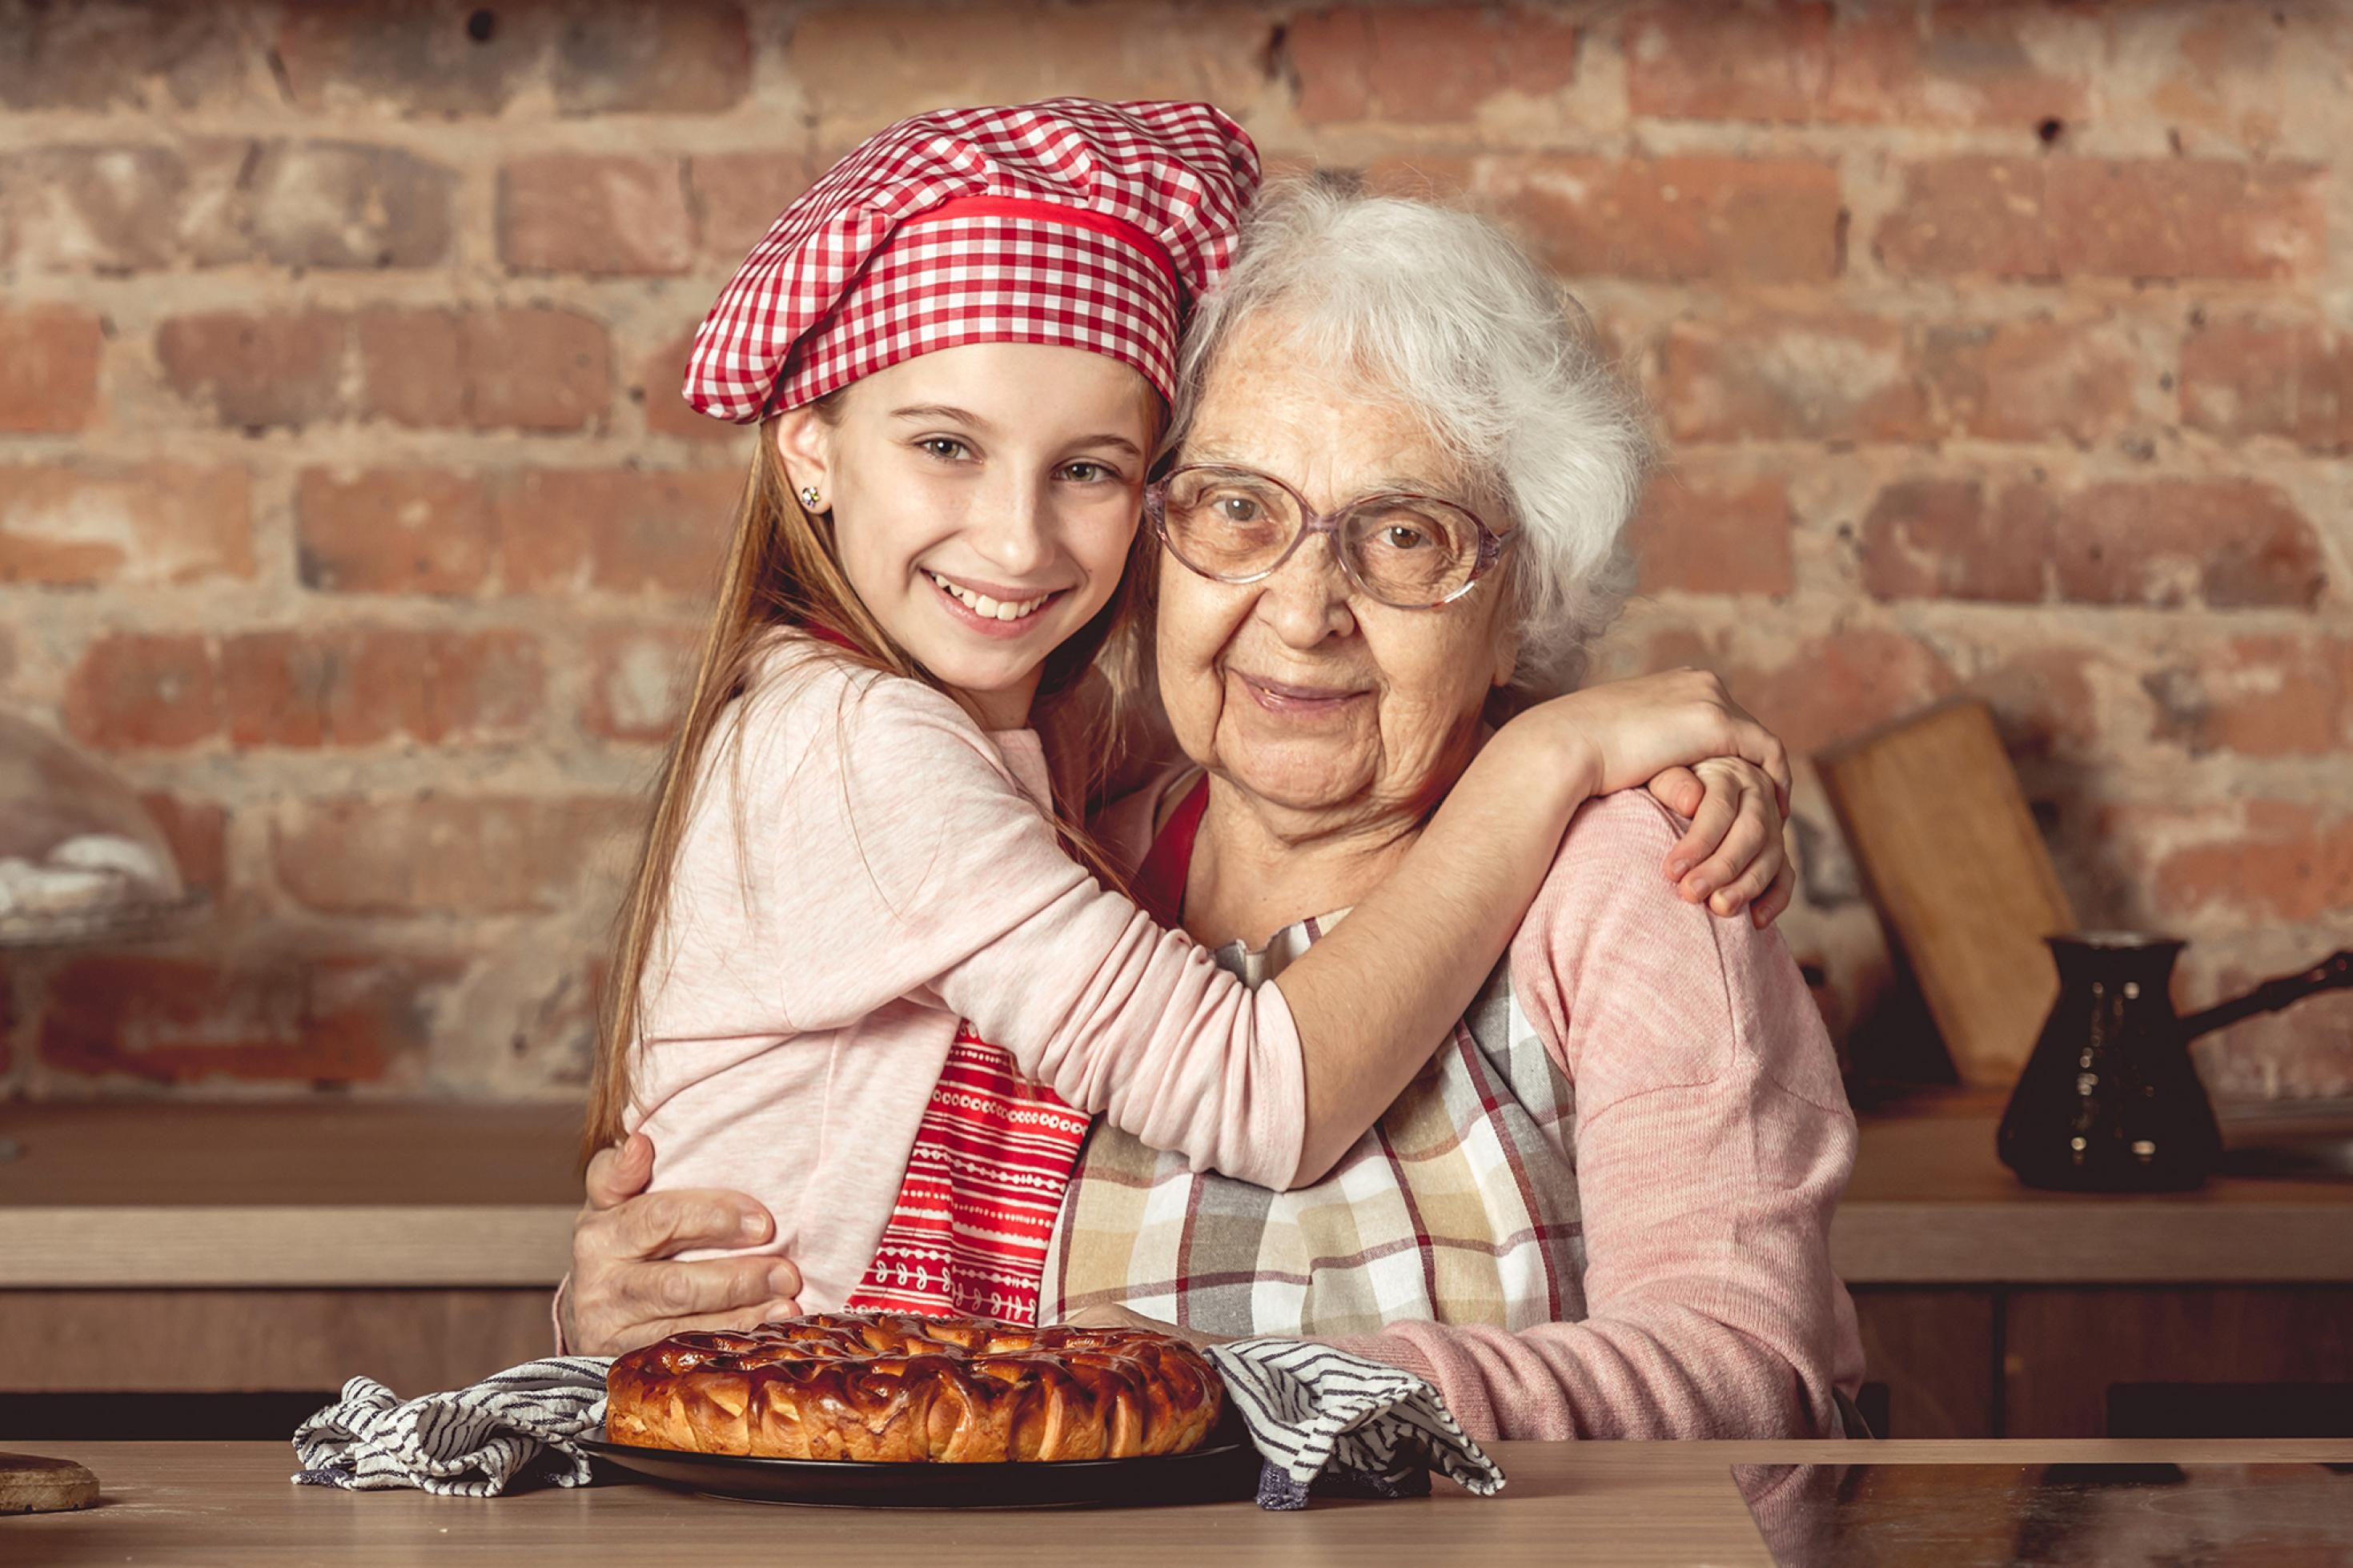 Das Foto zeigt eine weißhaarige, alte Frau mit Küchenschürze, die von einem lächelnden jungen Mädchen mit rot-weiß-karierter Kochmütze umarmt wird. Vor ihnen ein Gebäck. Sie befinden sich in einer altertümlichen Küche, hinter sich eine unverputzte Mauer aus roten Ziegelsteinen mit Ablage und Hängeschränken.